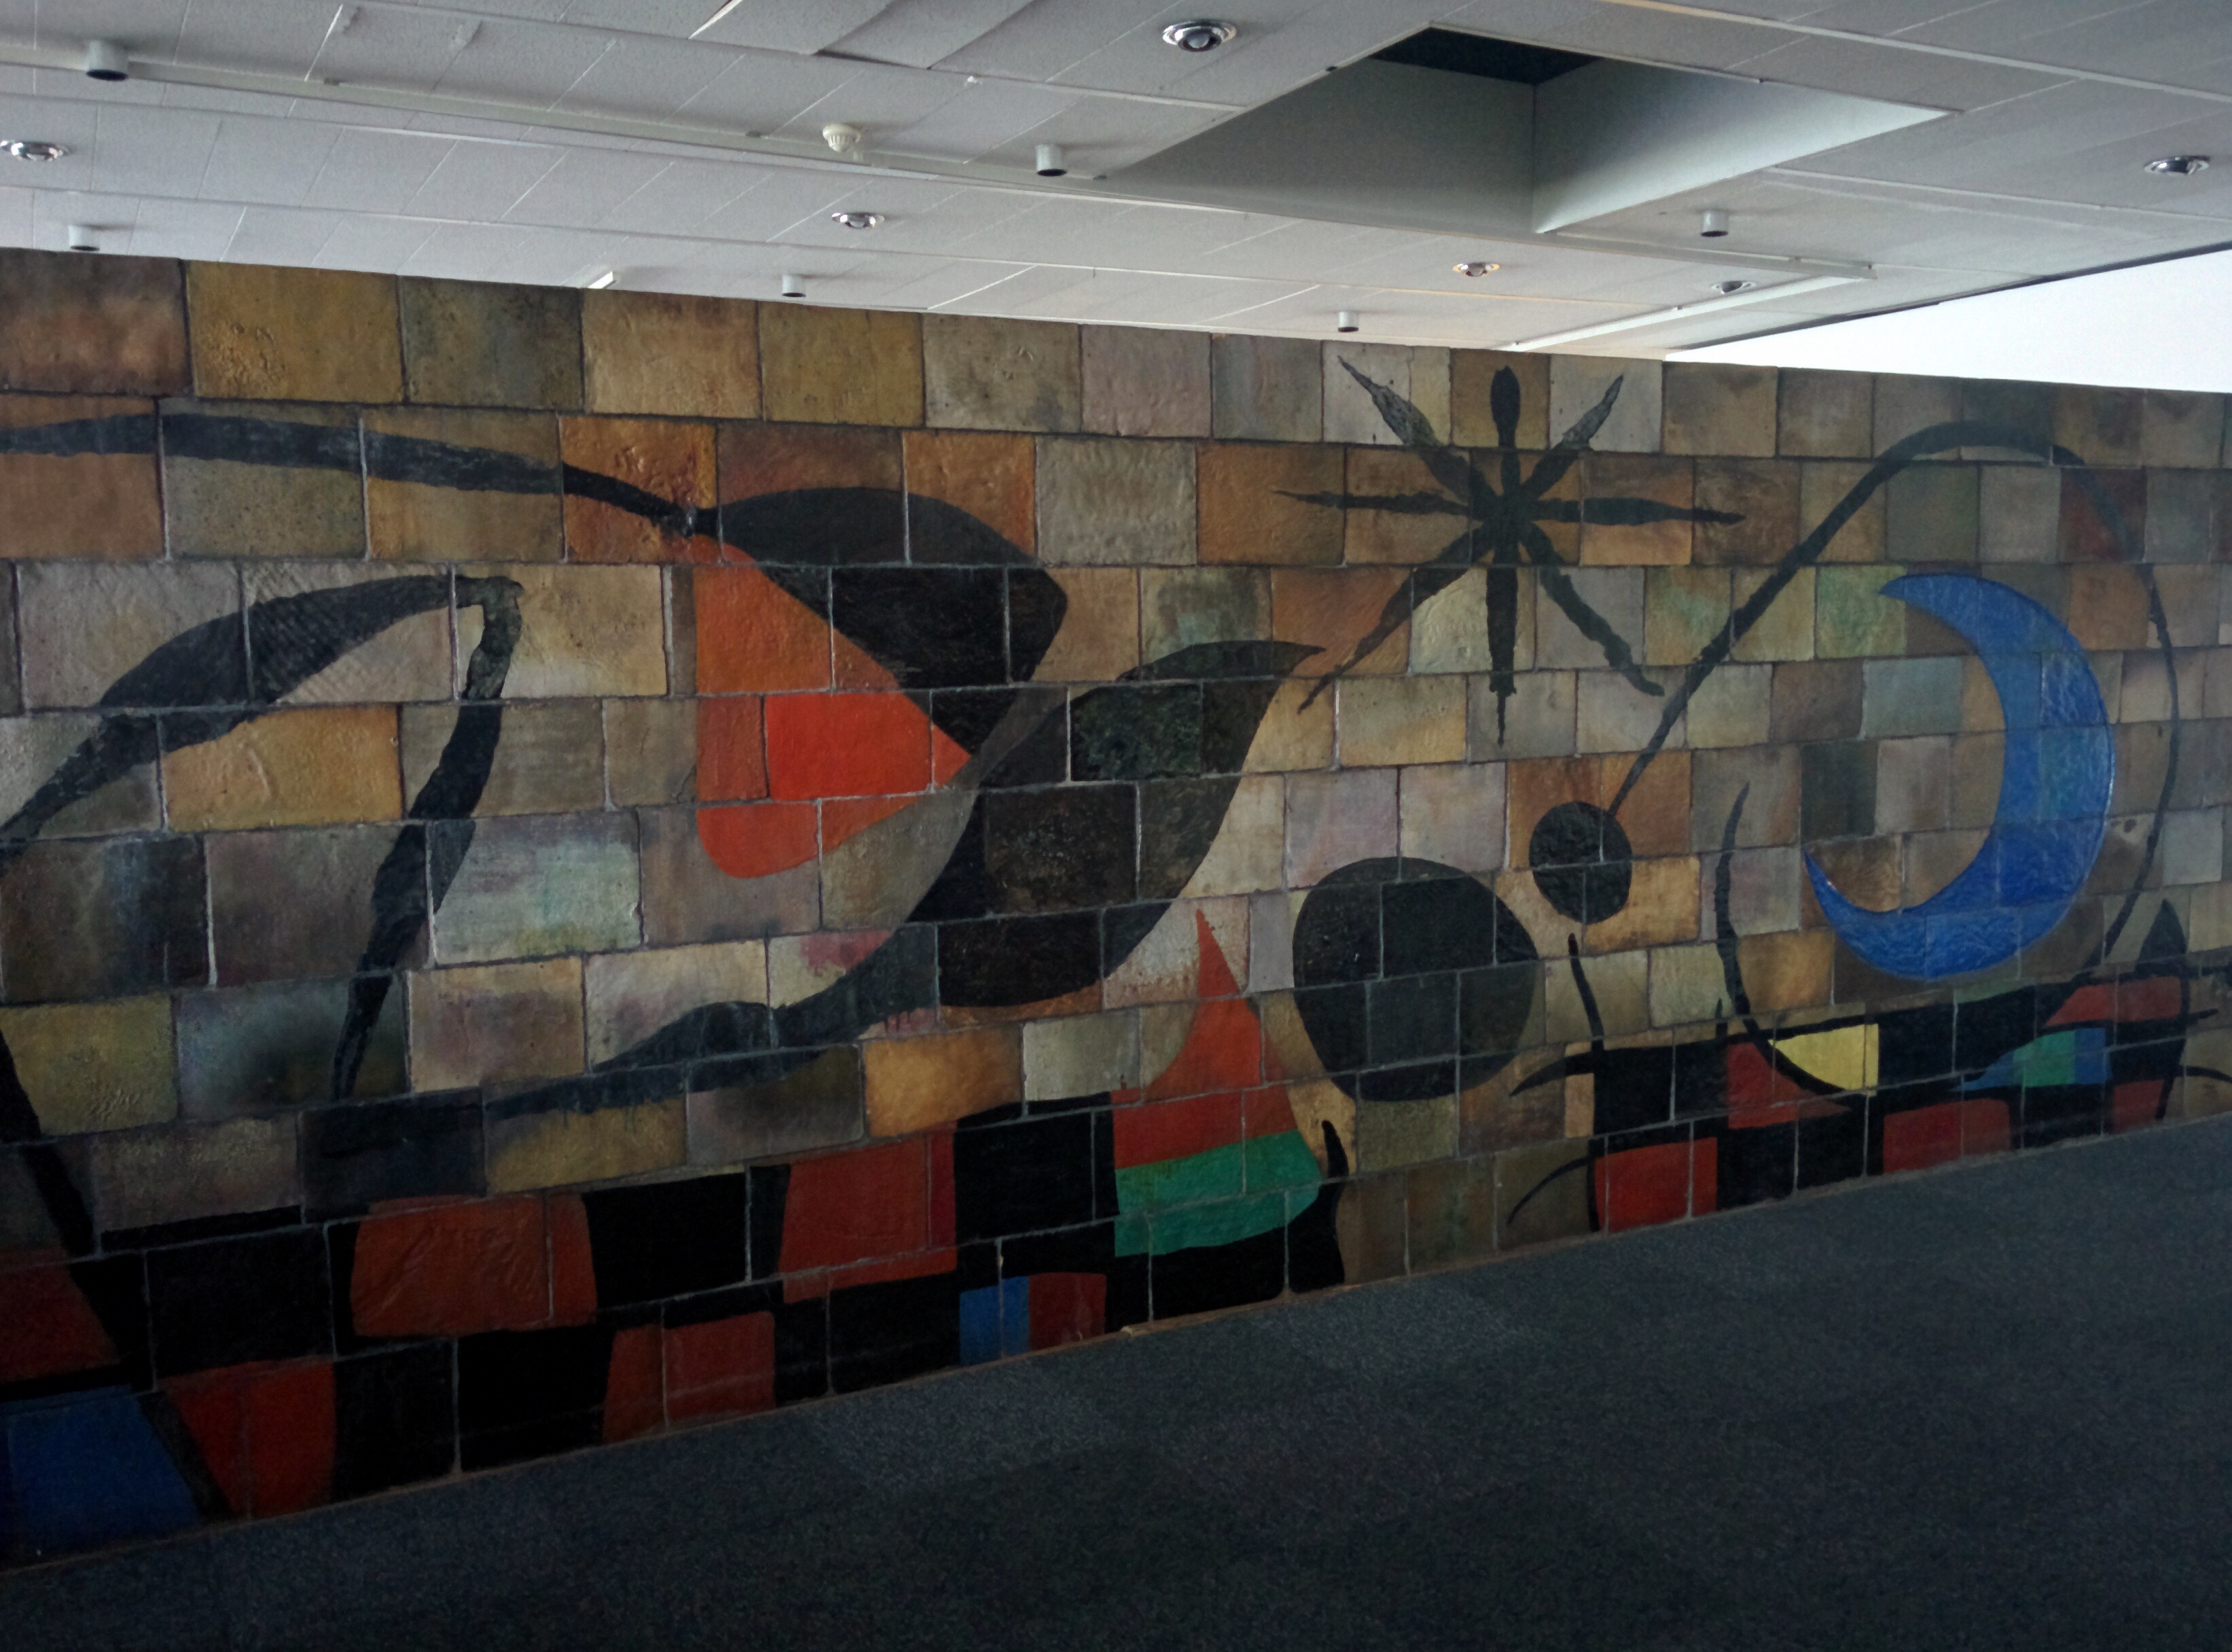 Joan Miró's most impressive ceramics & murals